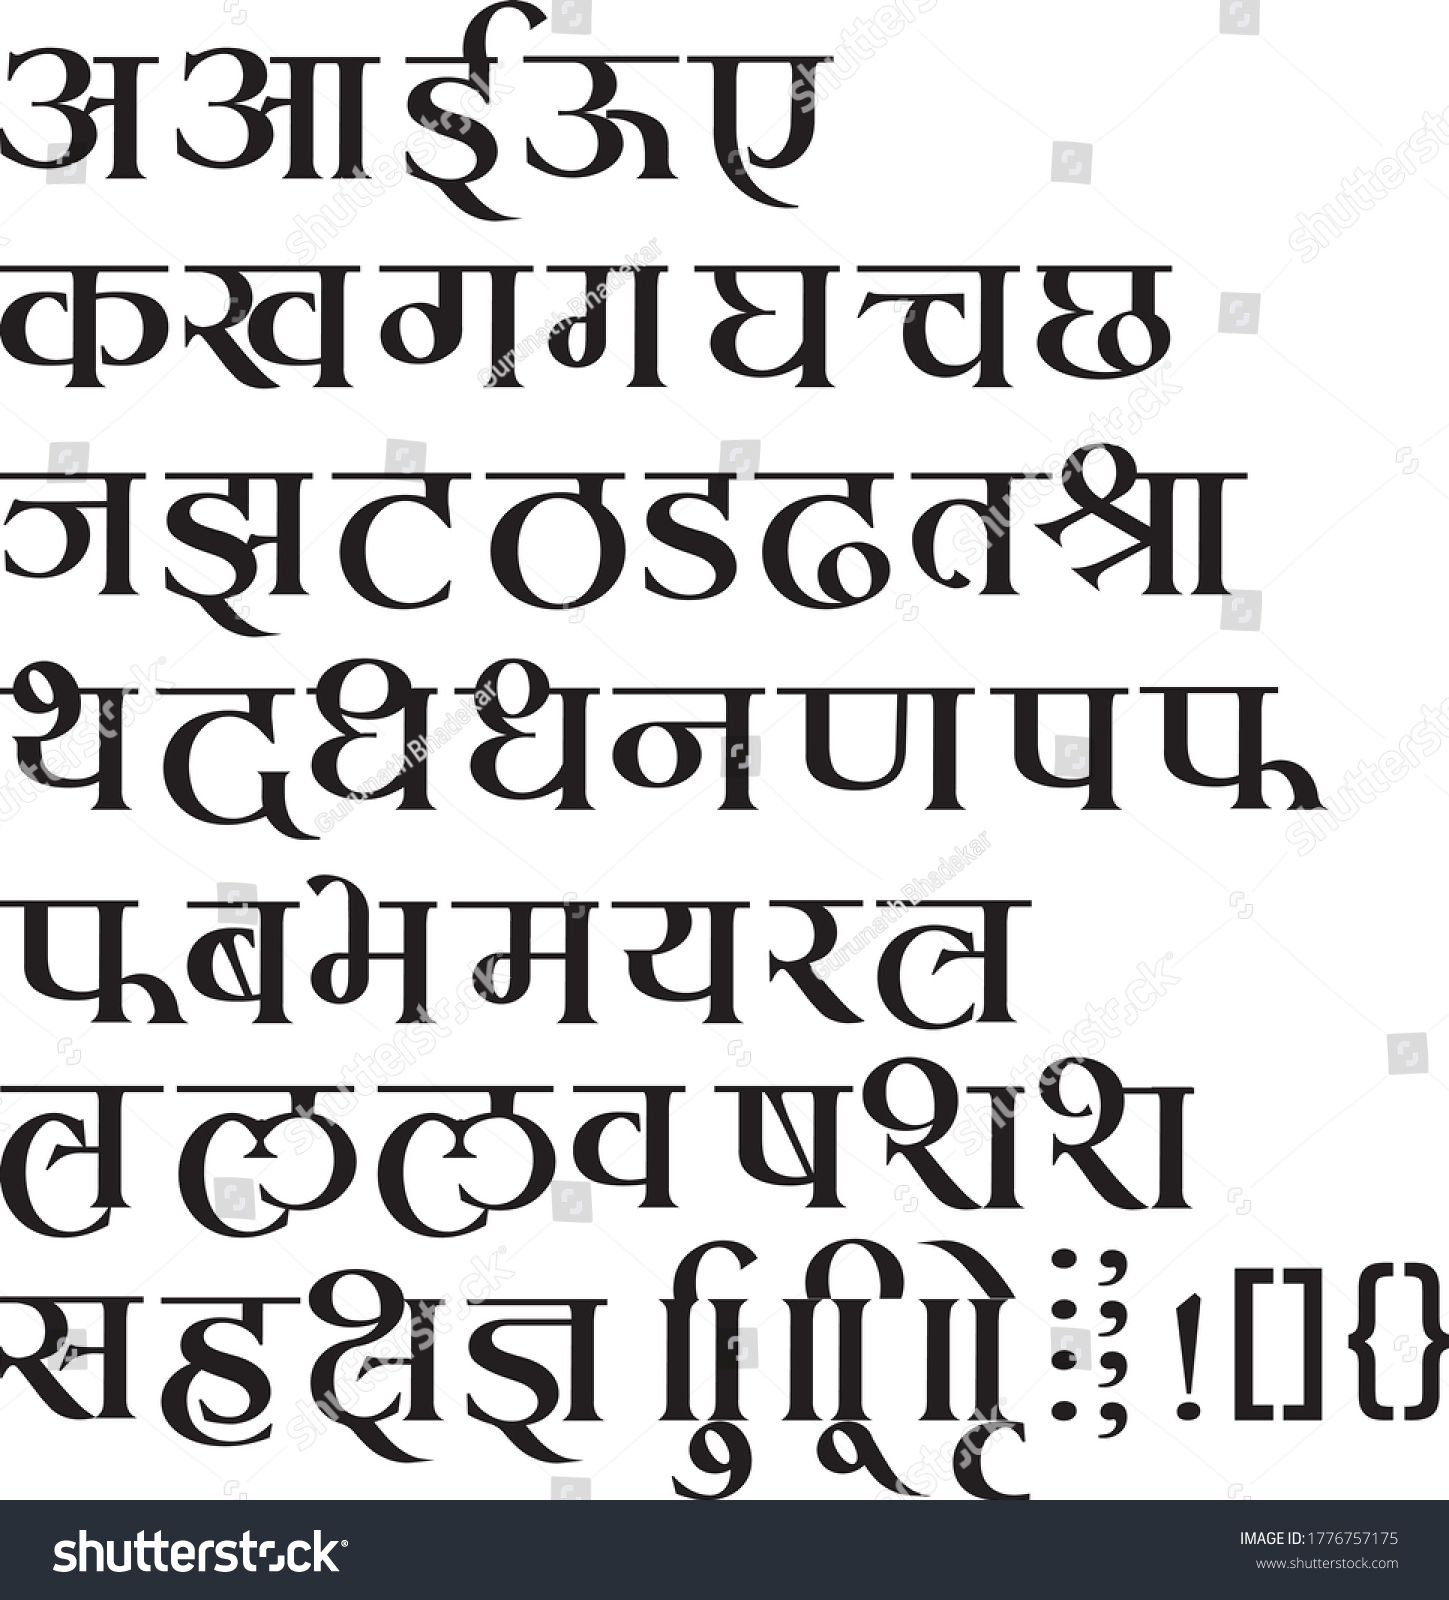 SVG of 
Handmade Devanagari font for Indian languages Hindi, Sanskrit and Marathi Indian languages svg